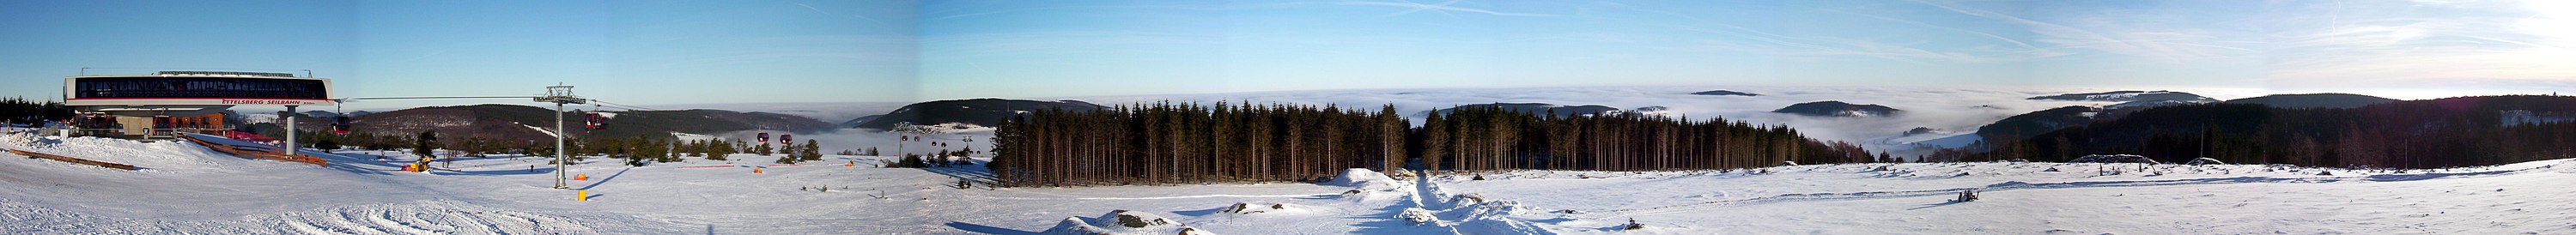 Nordblick am Ettelsberg. Der Orkan Kyrill hat große Teile des Nadelwaldes im Gipfelbereich gefällt. Ferner wurden die Gondelbahn und der Bergsee neu errichtet. Durch den Orkan hatte man auch ohne Turmbesteigung diesen schönen Rundblick über das Nebelmeer im Dezember 2008. Standort der Aufnahme ist übrigens die erste Schanze der MTB-Weltcupstrecke.